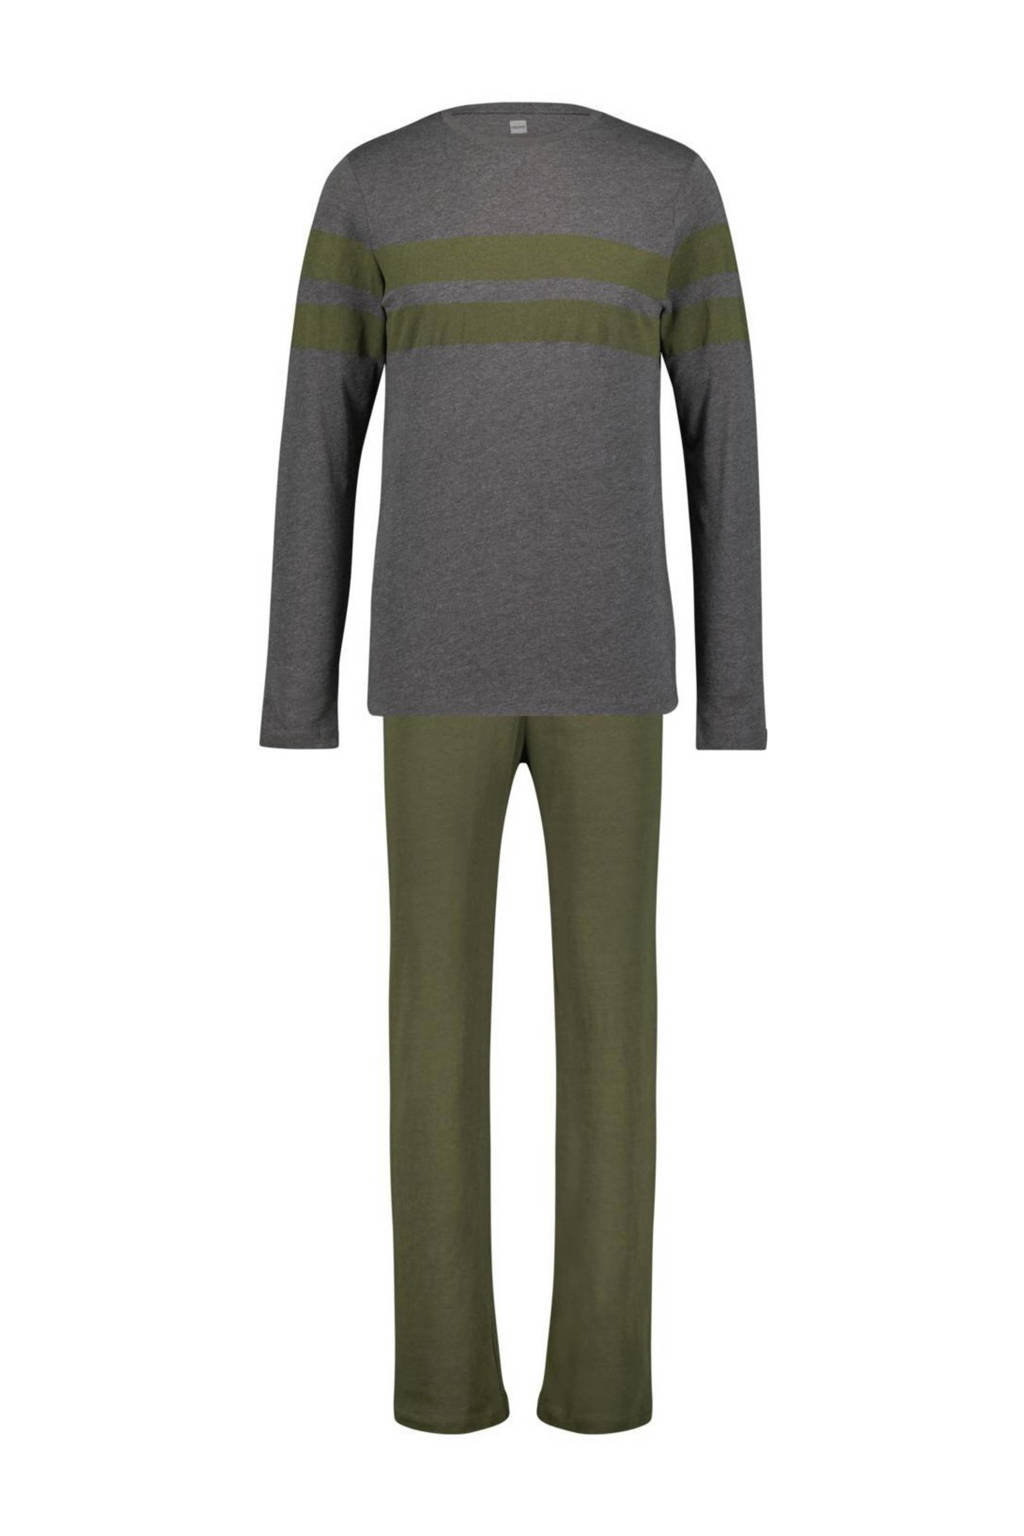 HEMA pyjama grijs/groen, Grijs/groen